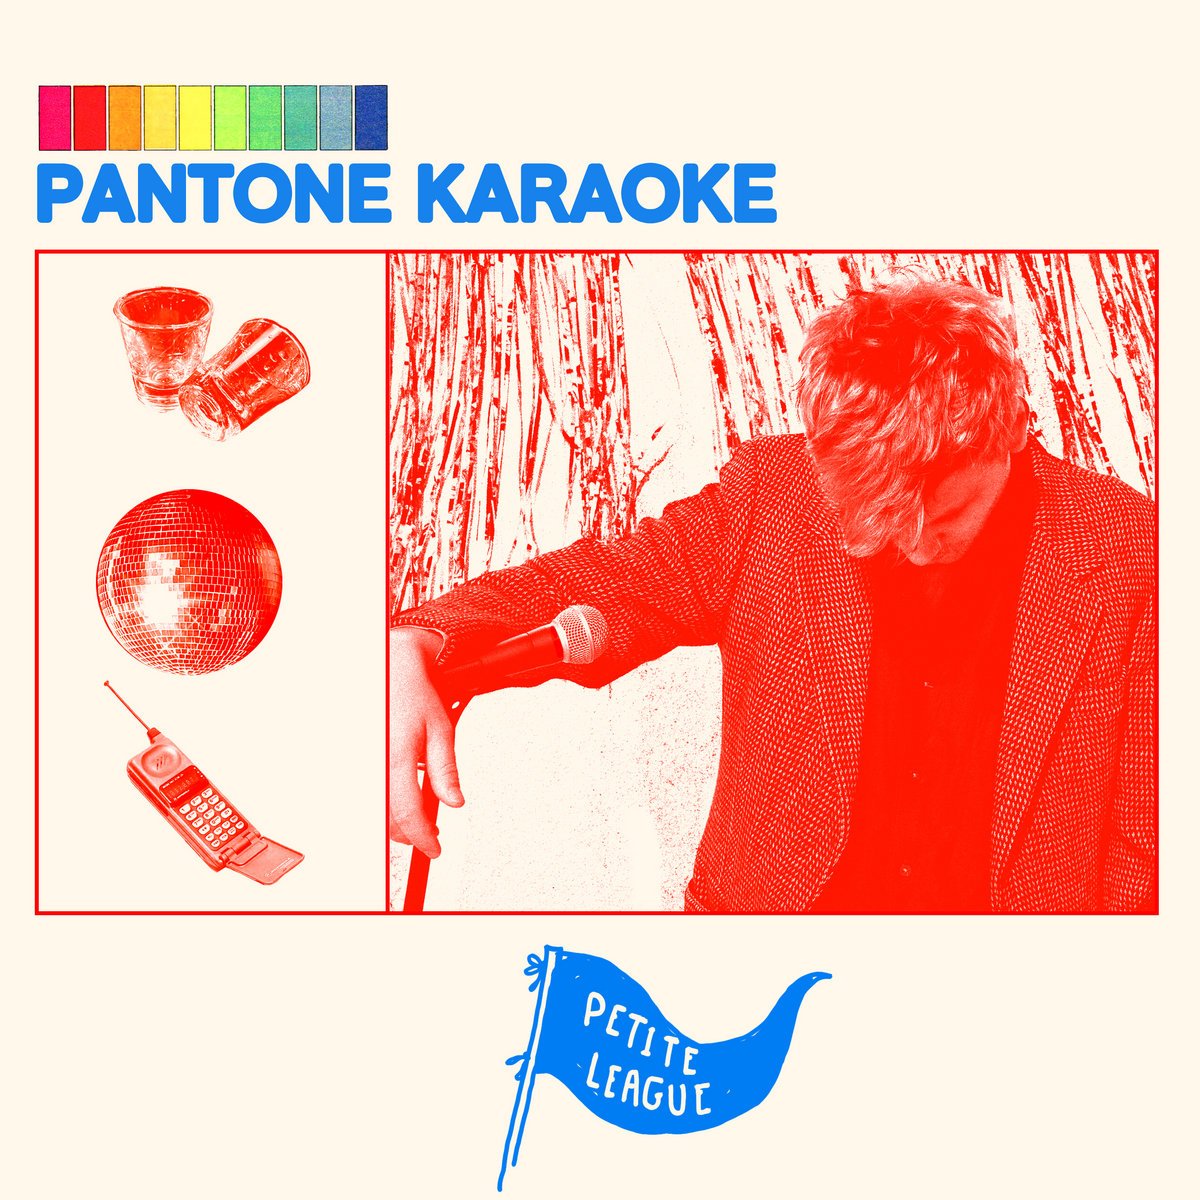 Pantone Karaoke - Petite League